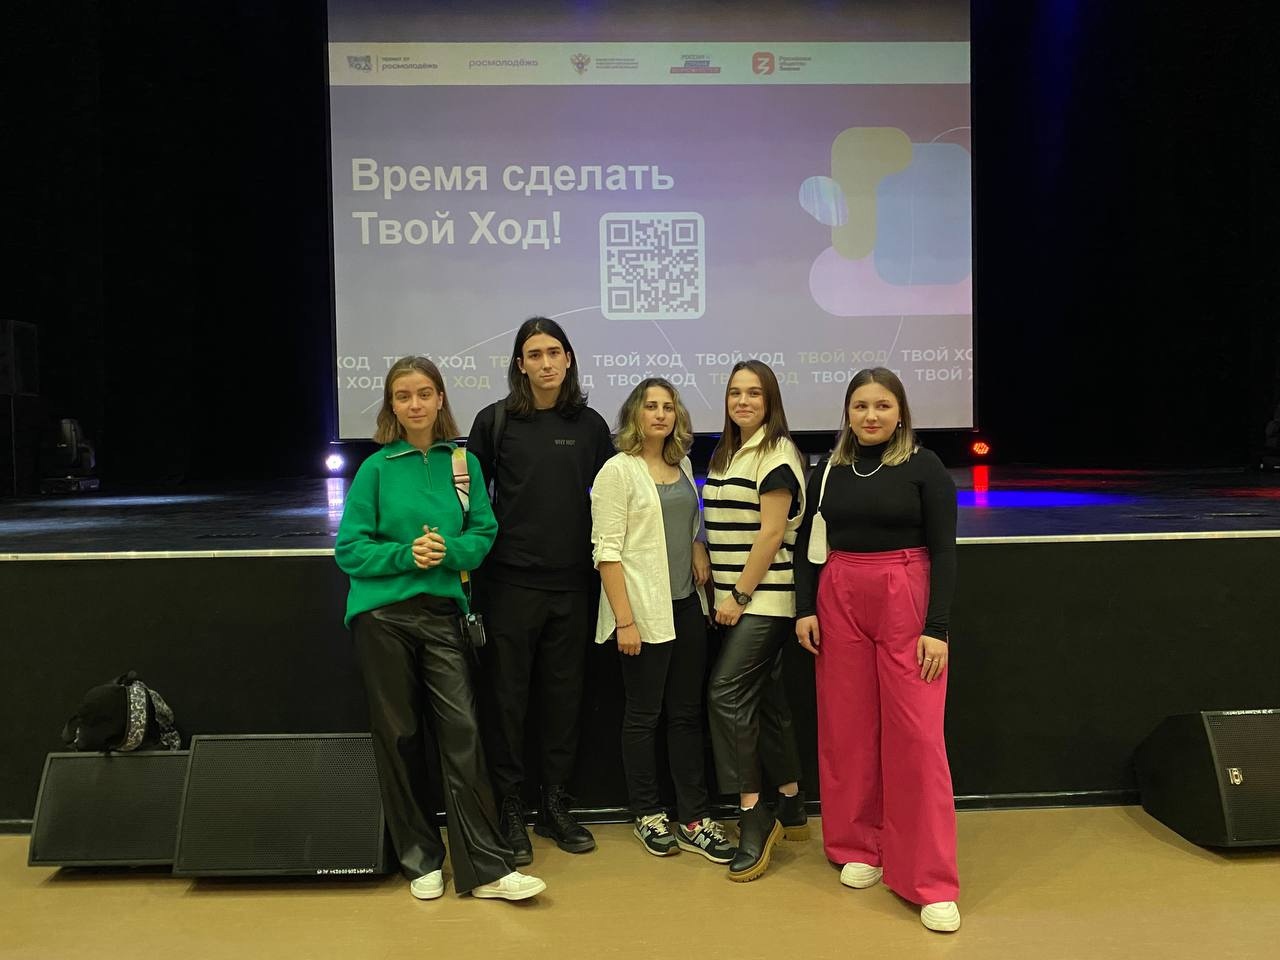 Студенты Института посетили презентацию Всероссийского студенческого конкурса «Твой ход»